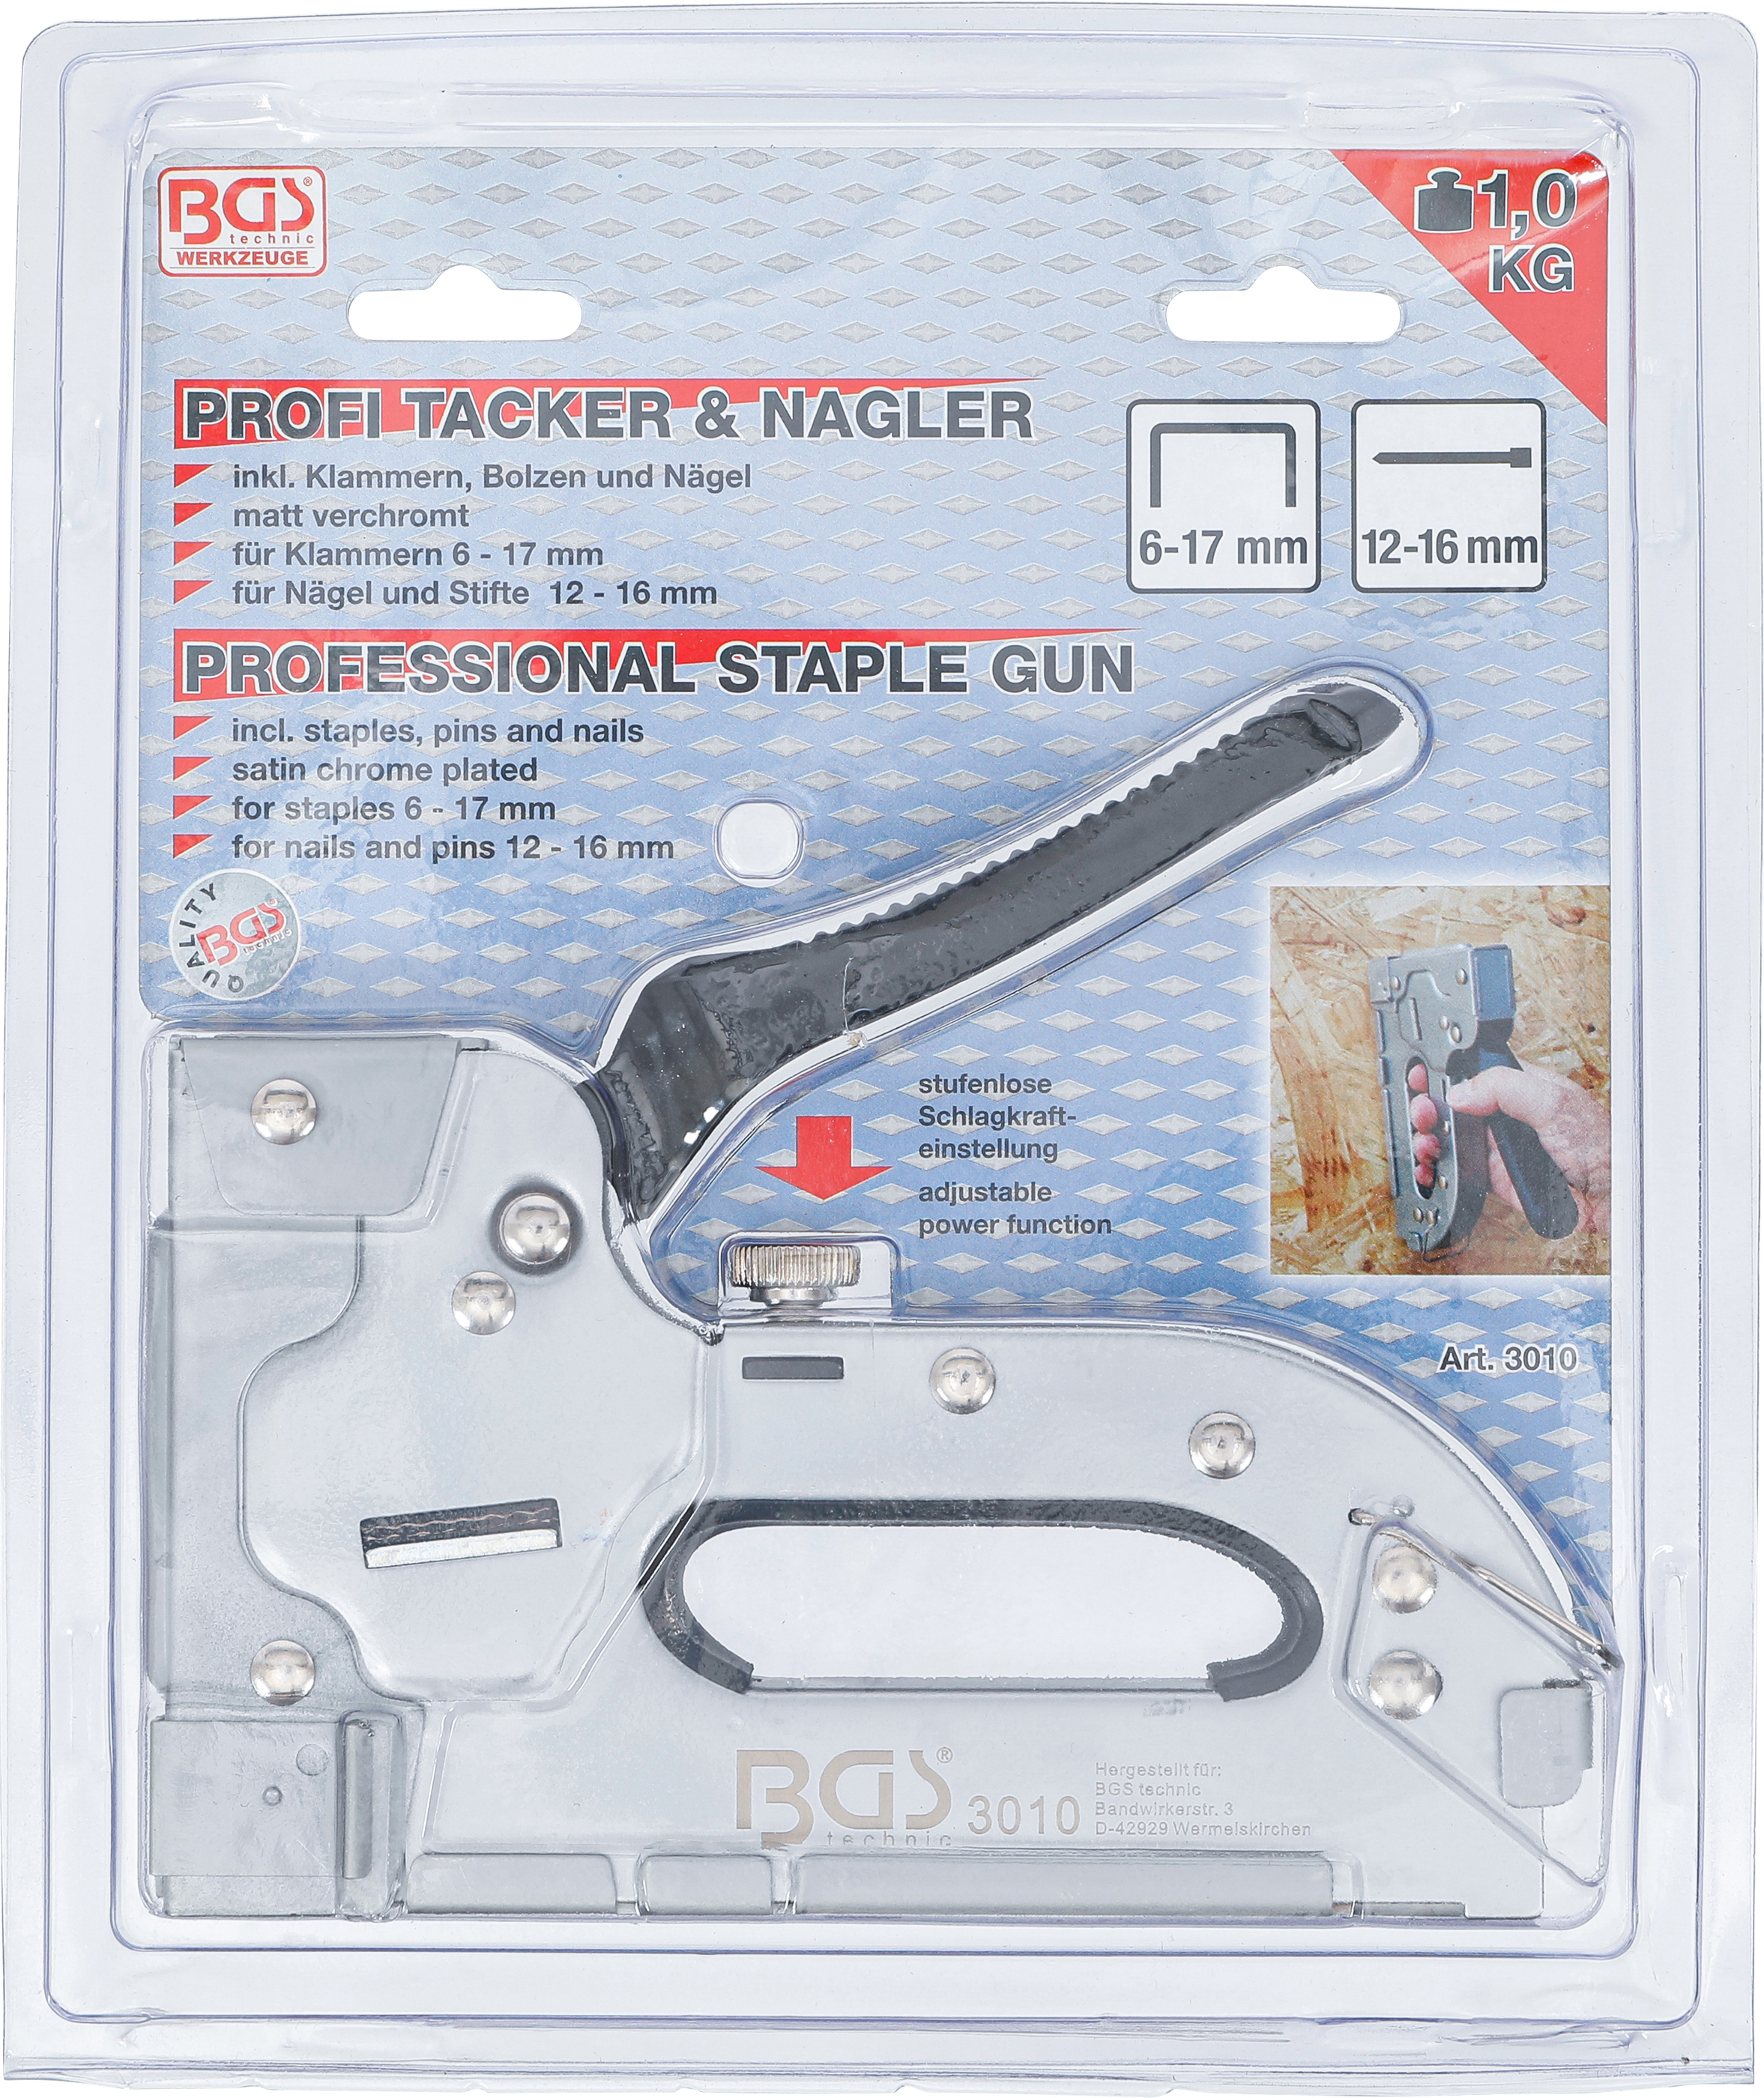 BGS Handtacker | für Klammern 6 - 17 mm | Nägel und Stifte 12 - 16 mm